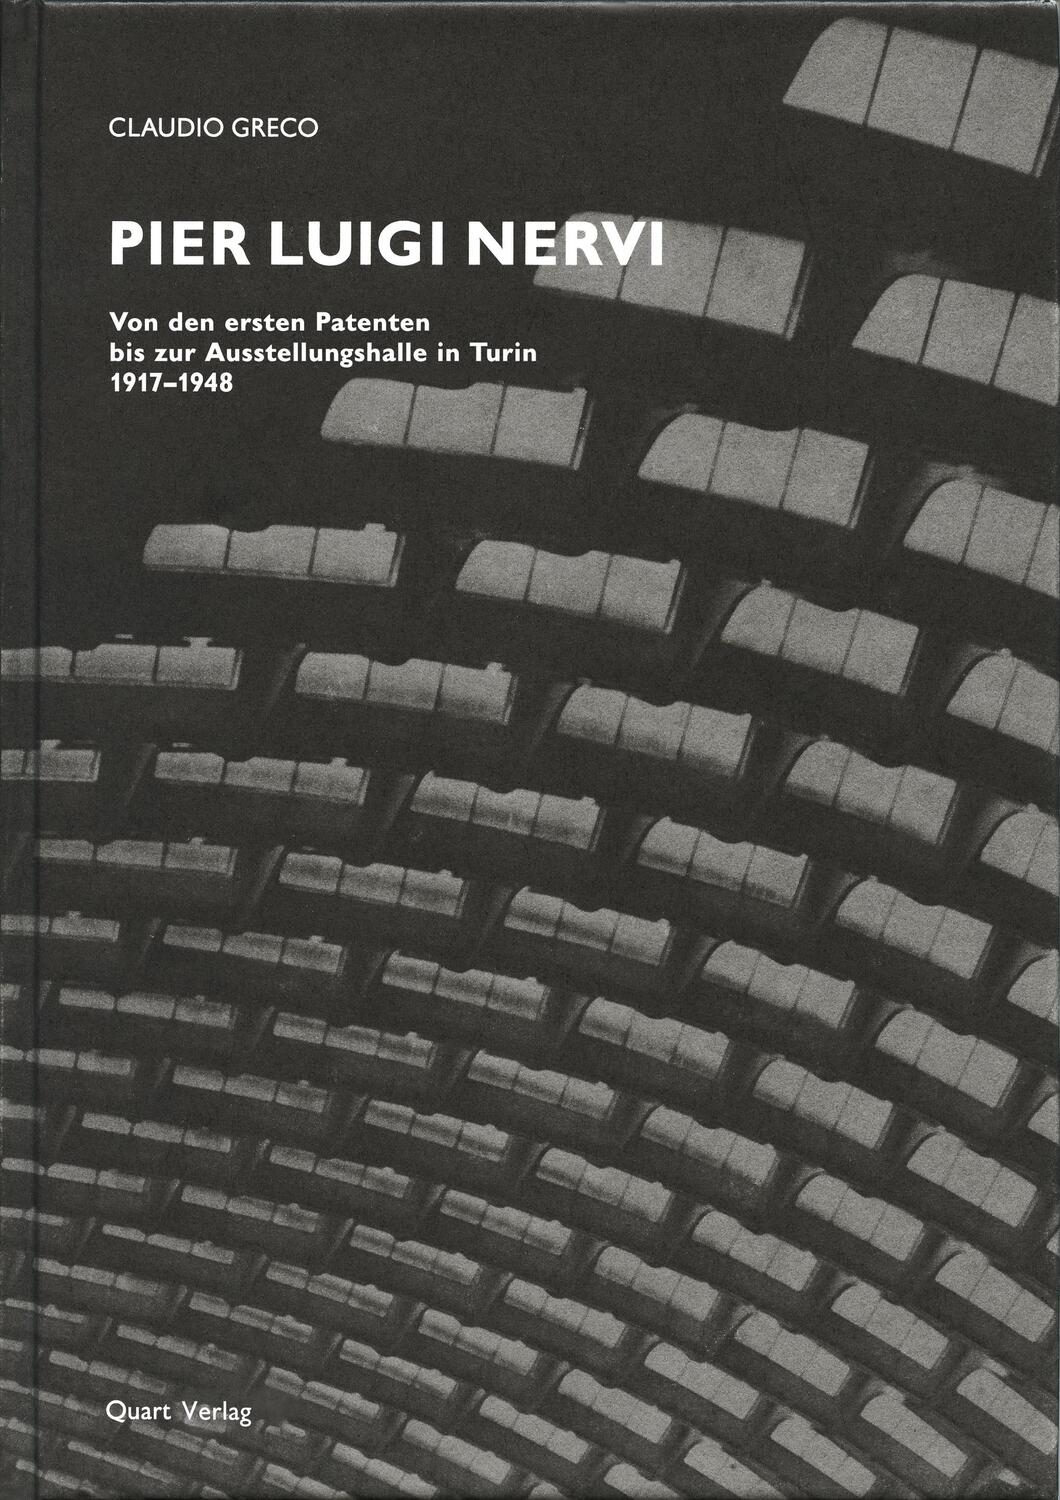 Pier Luigi Nervi - Greco, Claudio